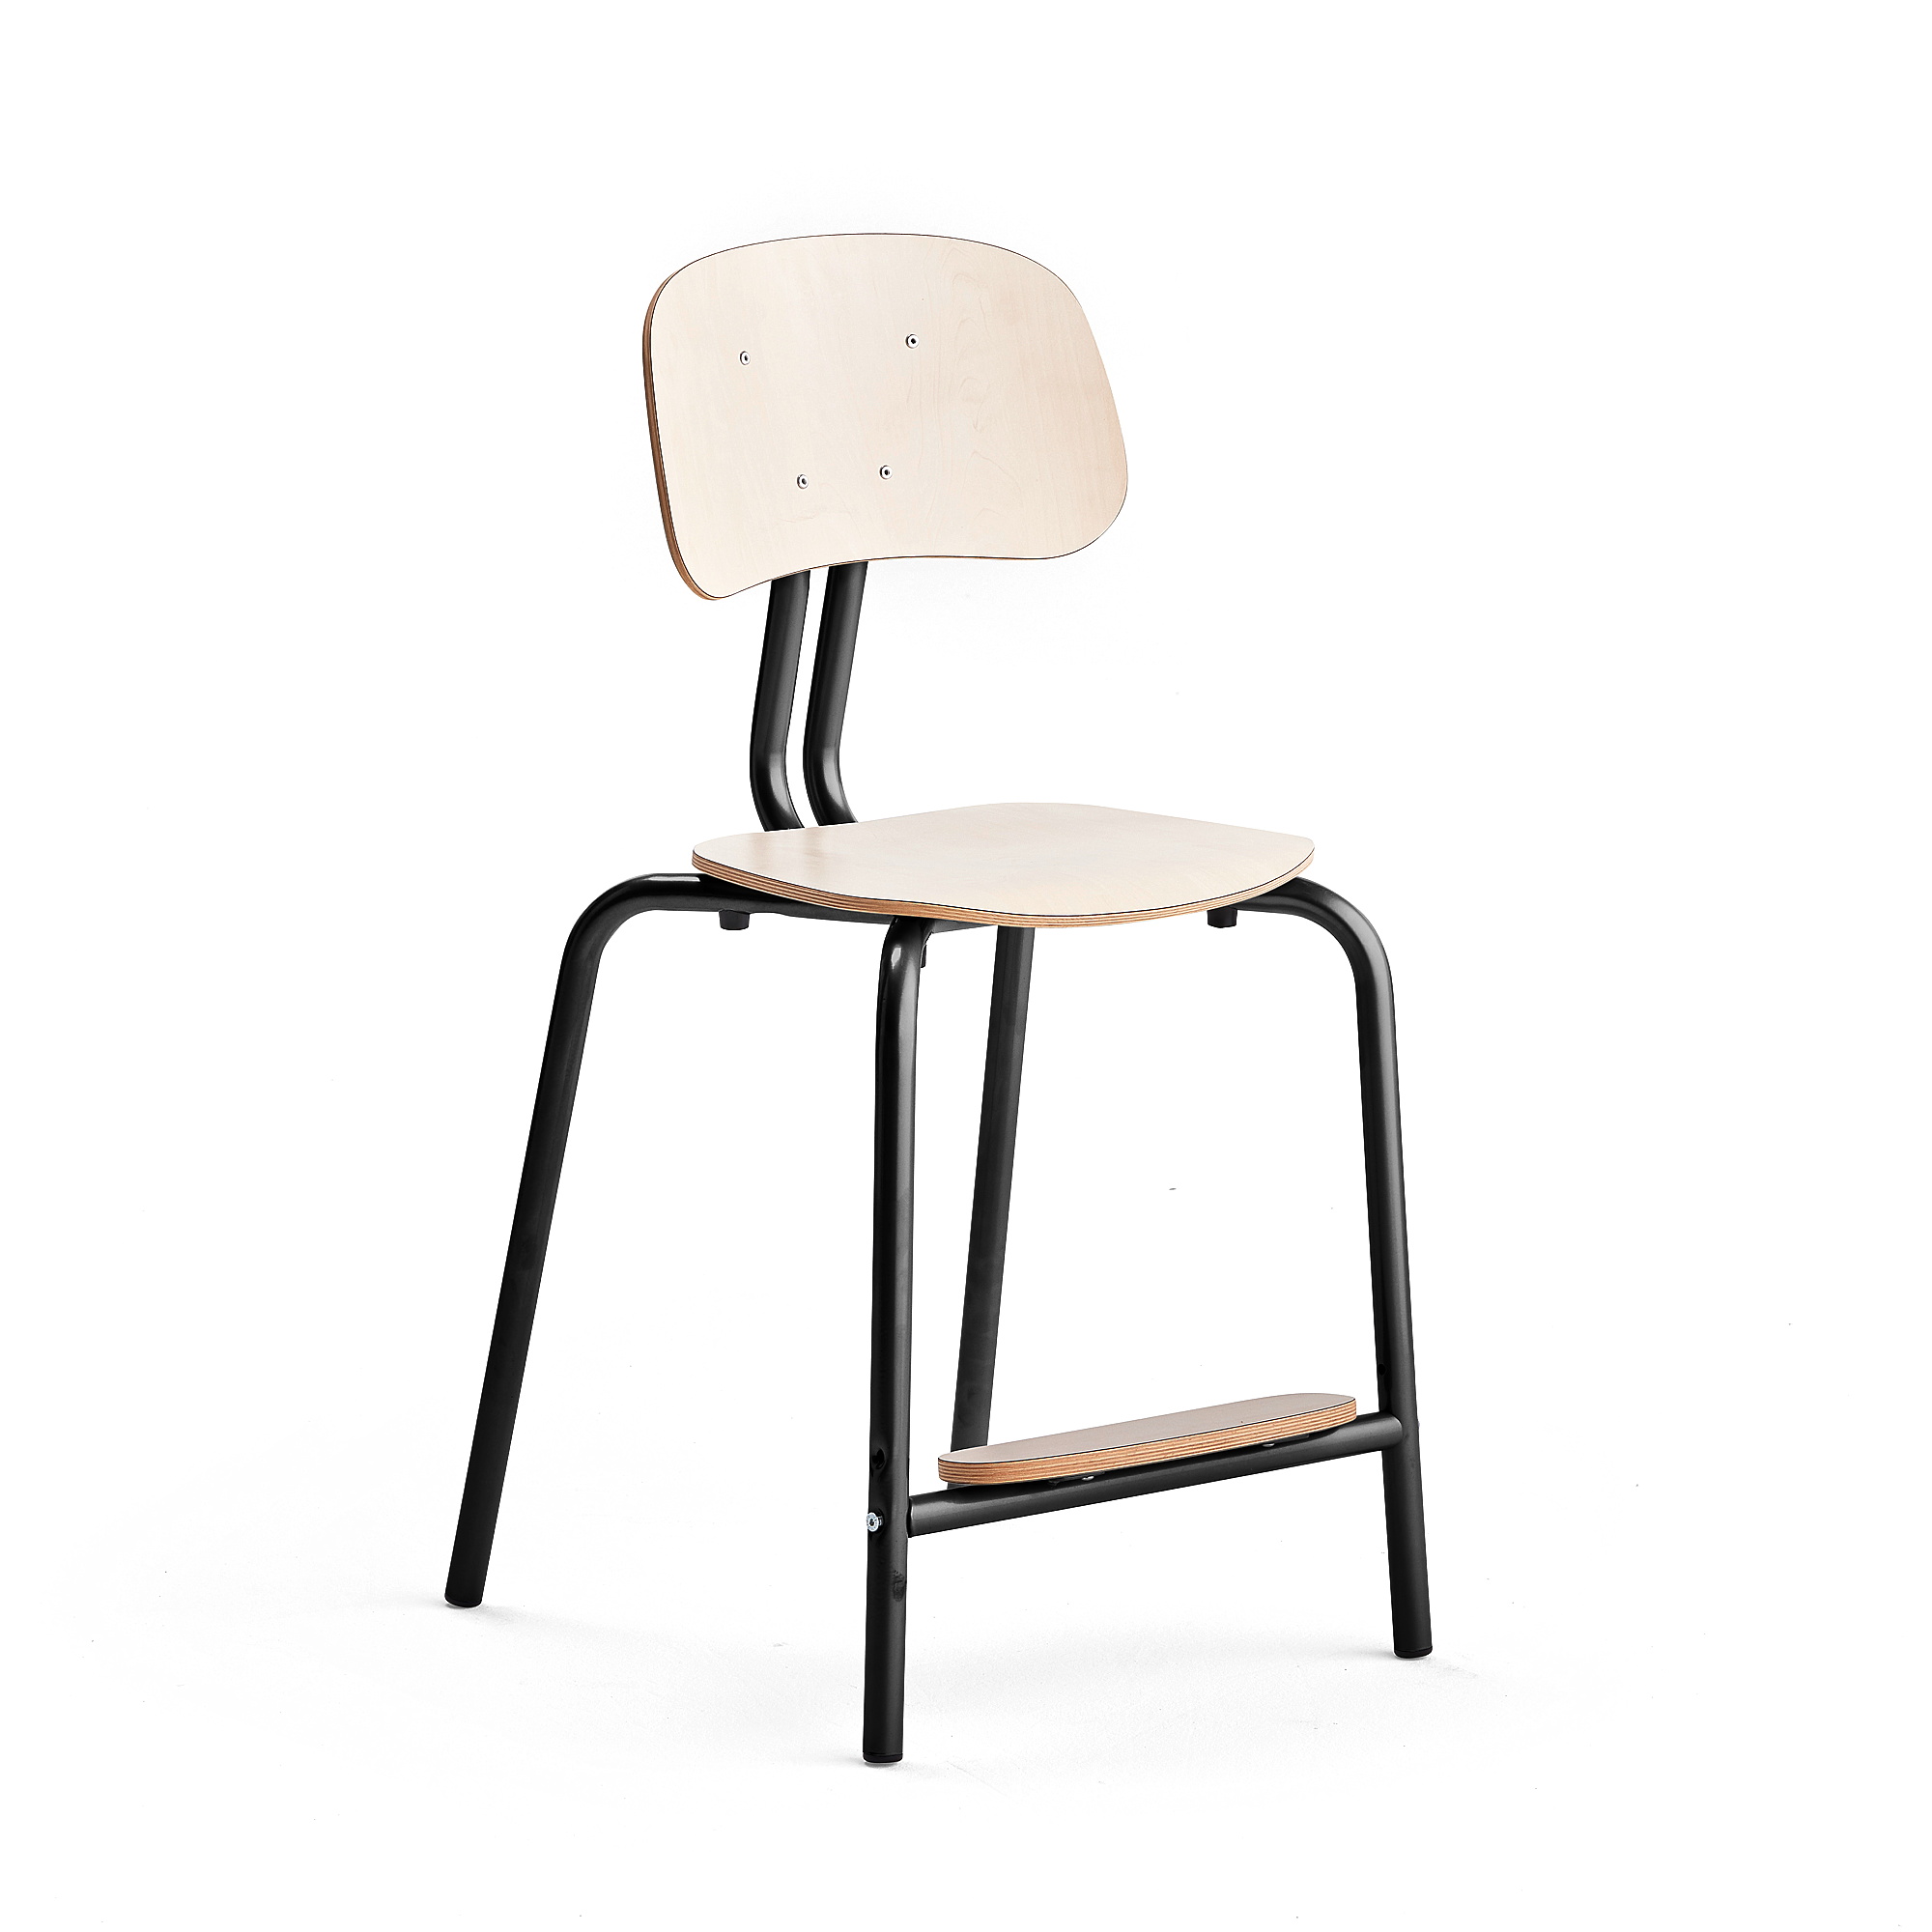 Školní židle YNGVE, 4 nohy, výška 520 mm, antracitově šedá/bříza